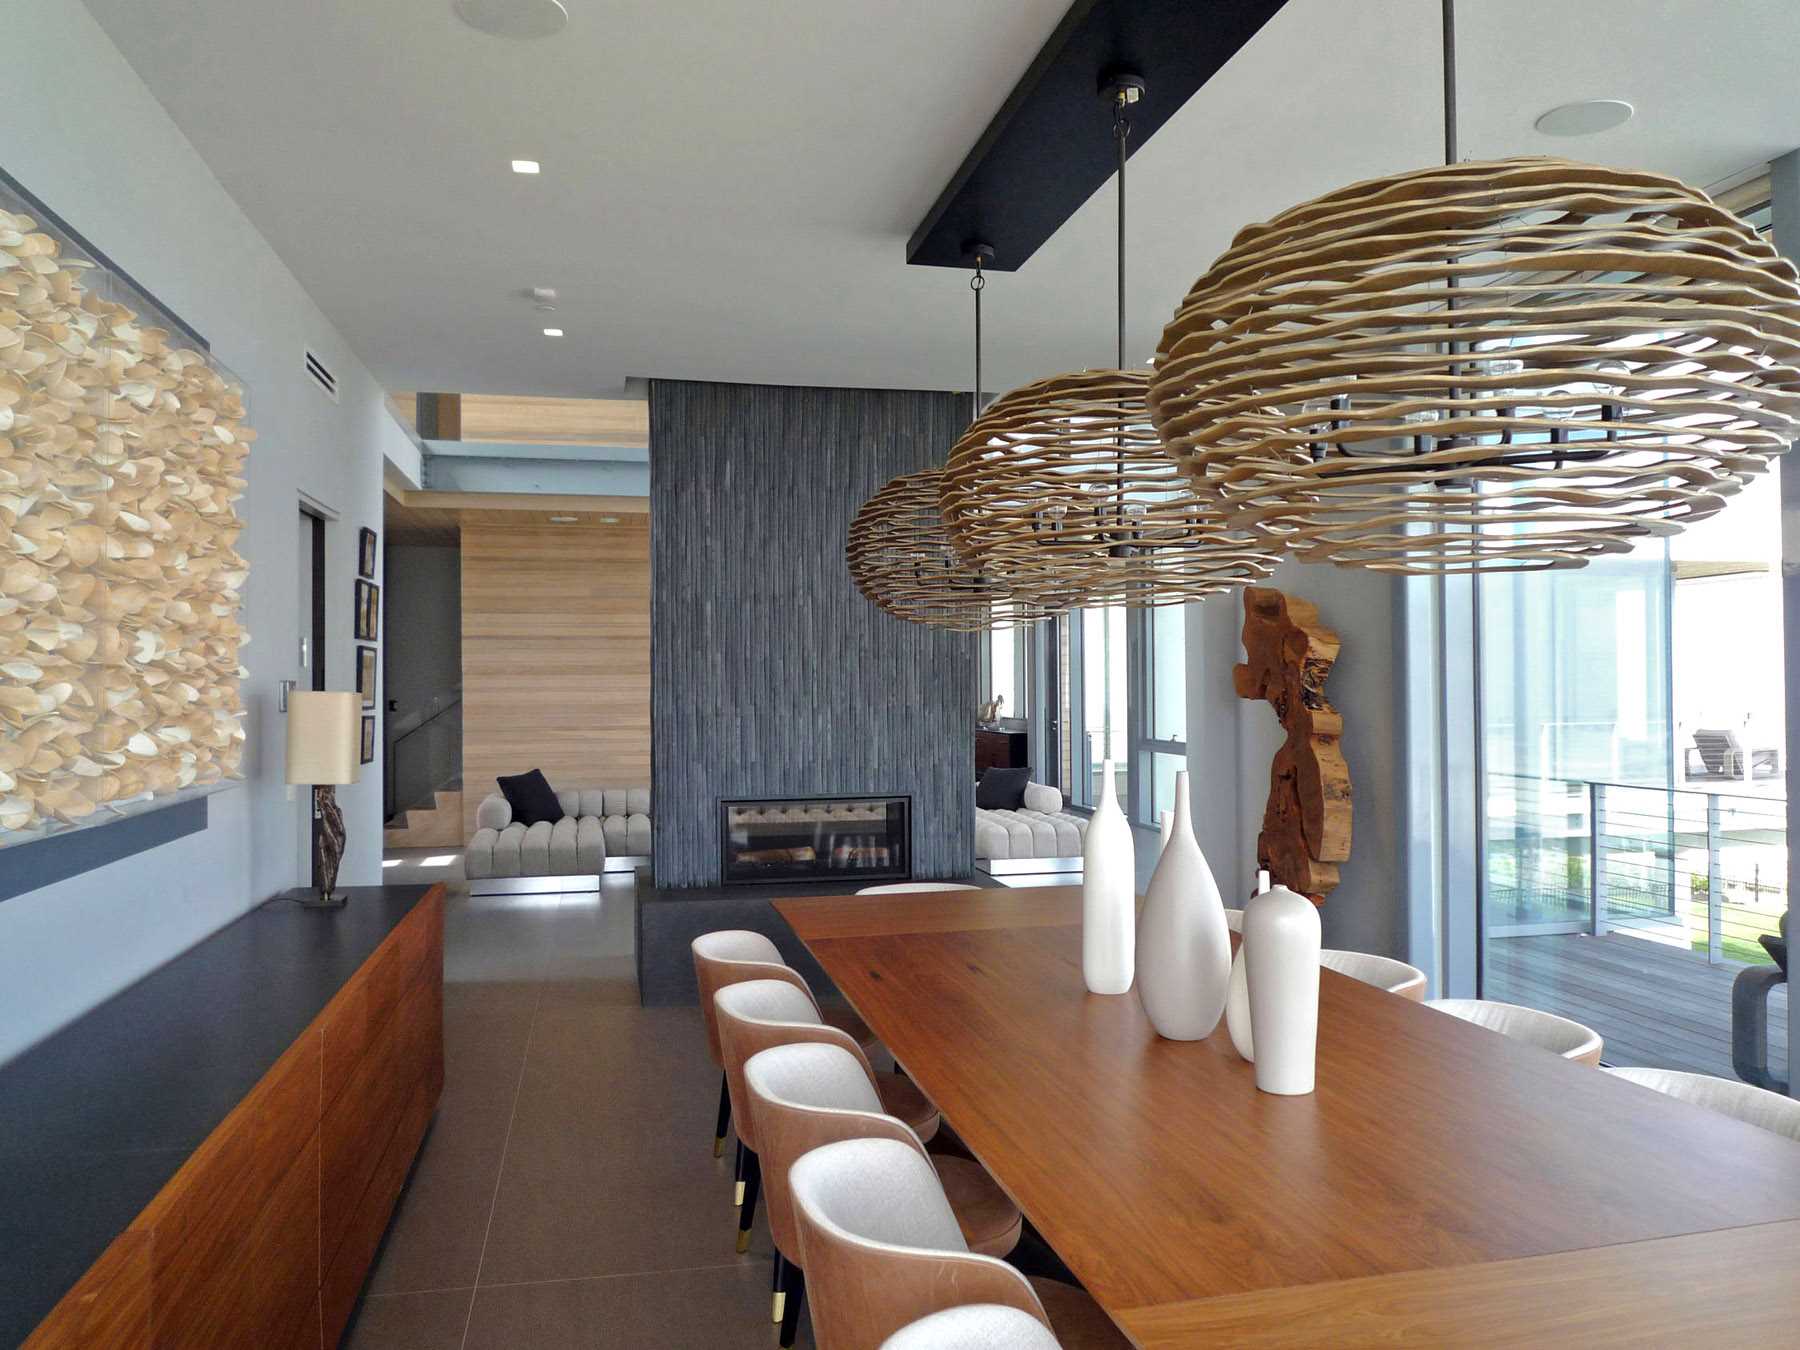 یک اتاق غذاخوری مدرن با شومینه و میز چوبی بزرگ.